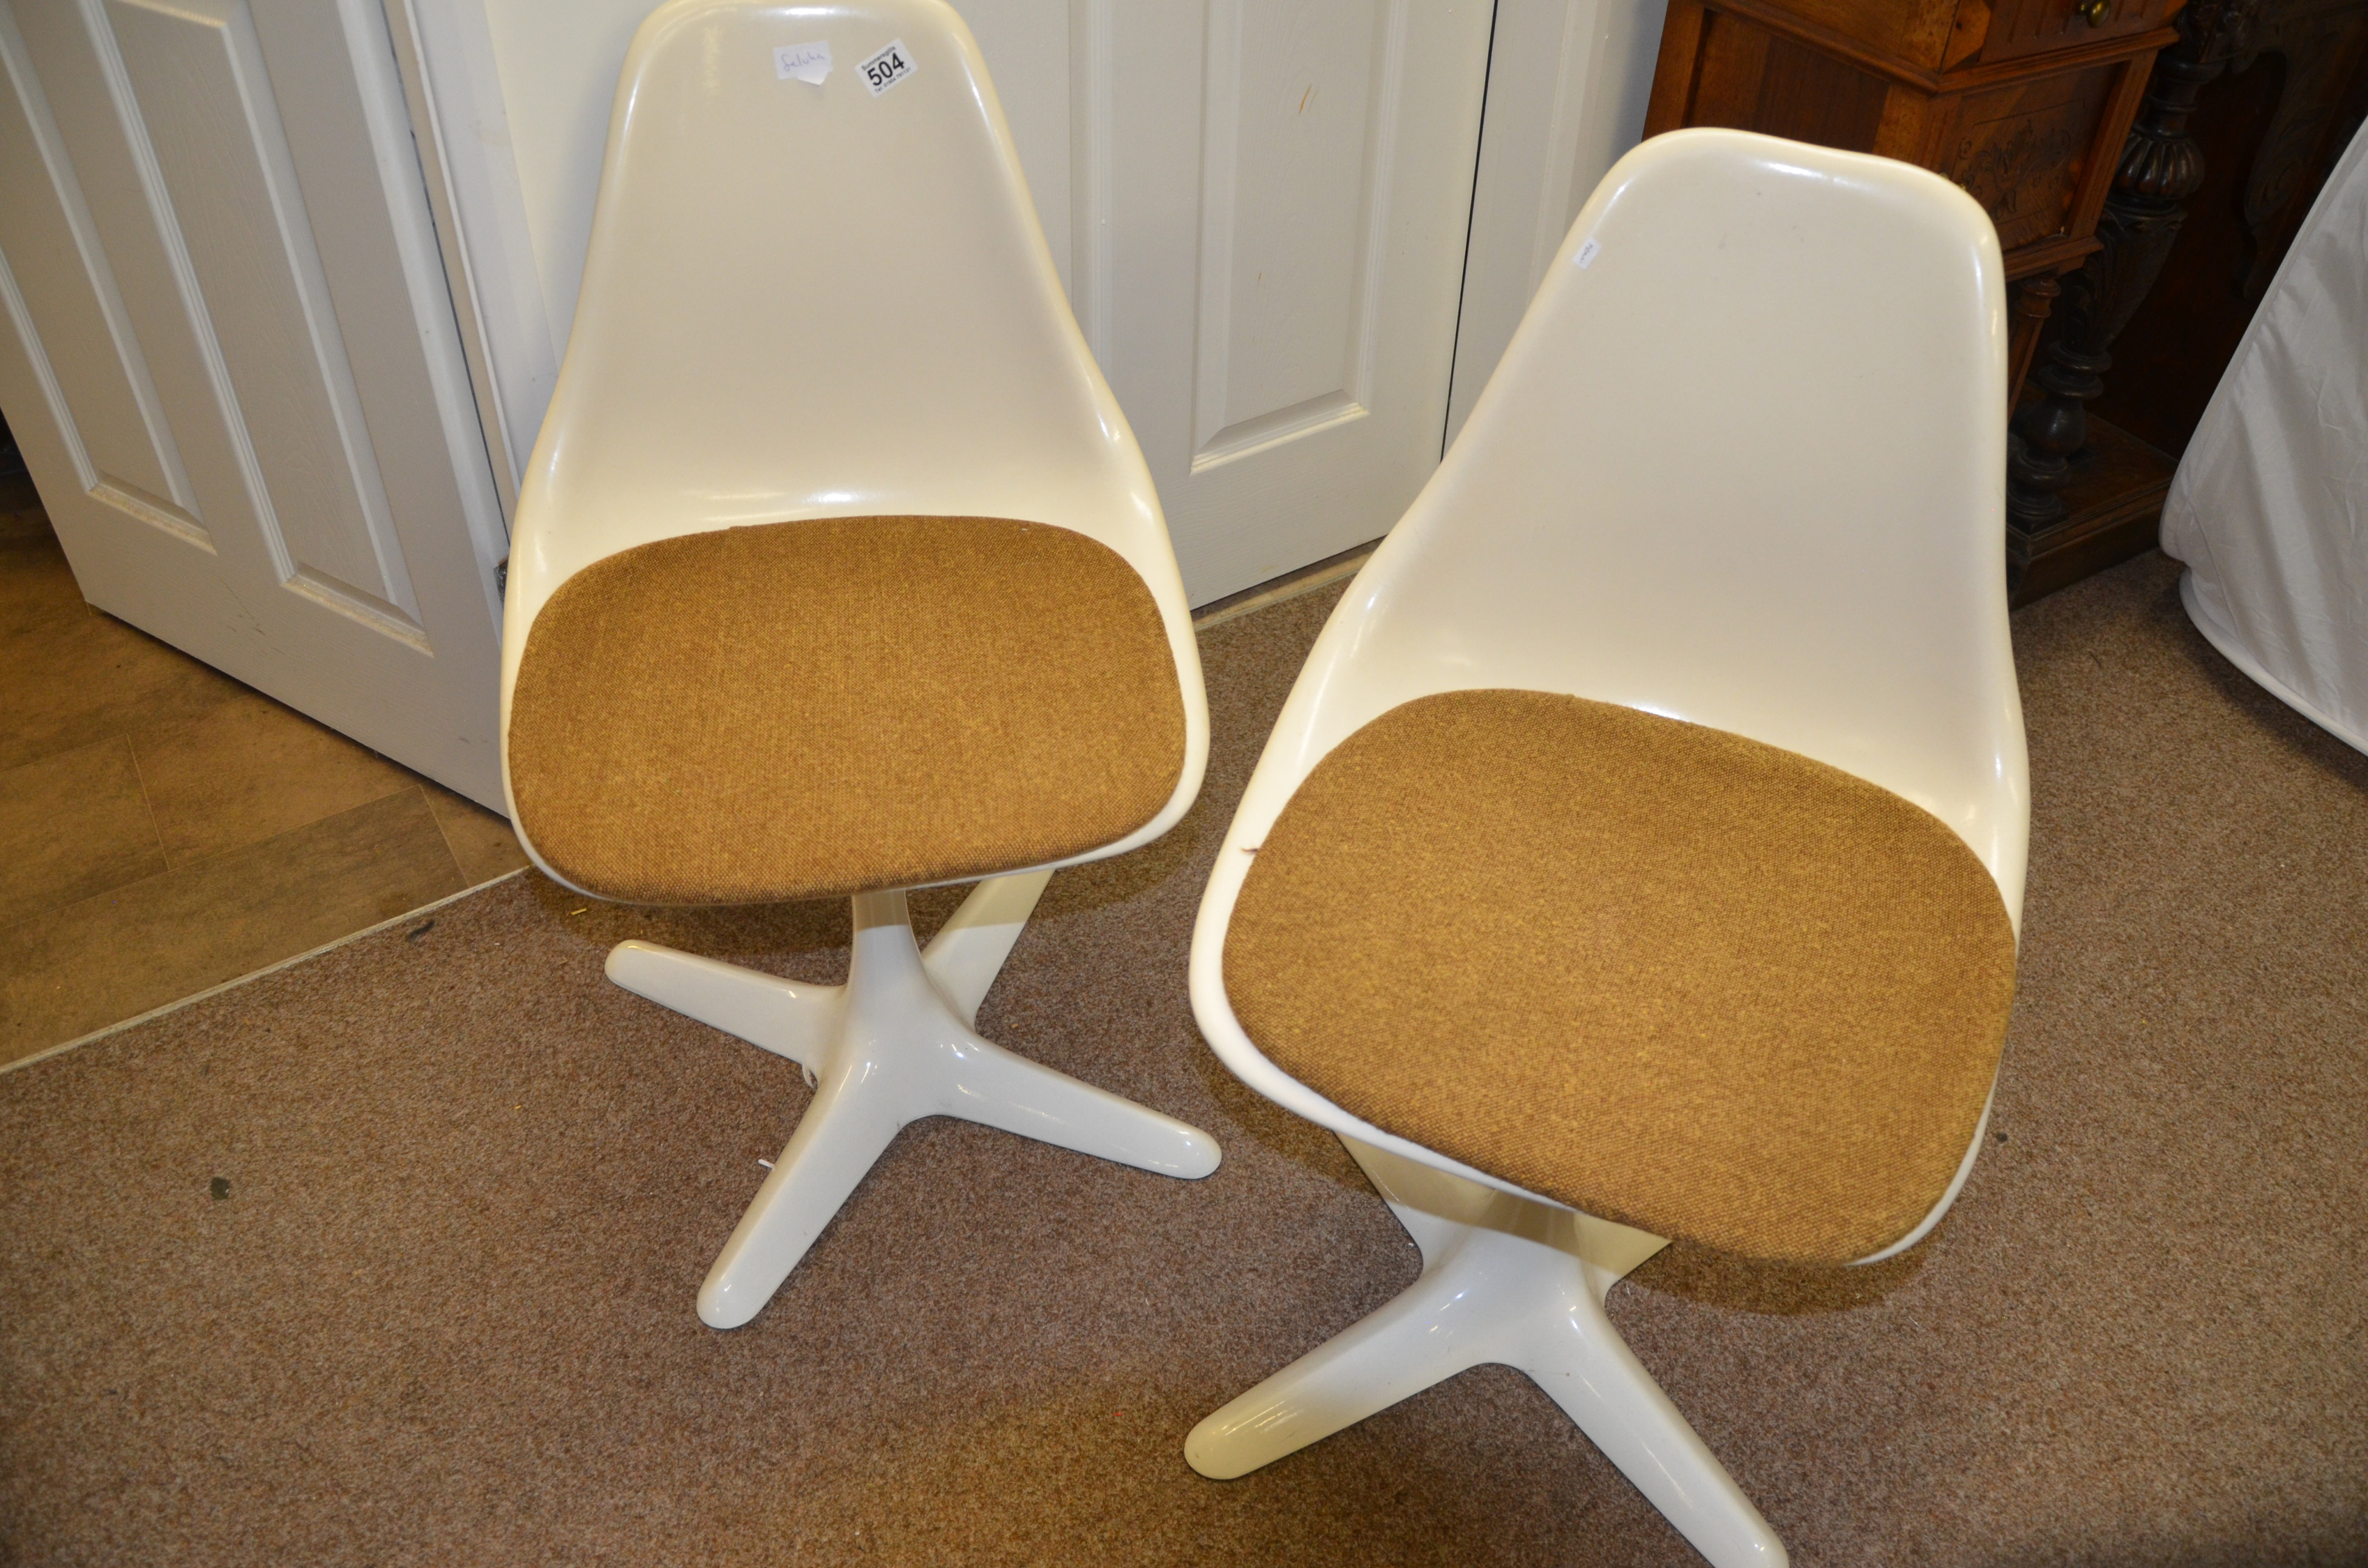 Pair of Arkana Chairs